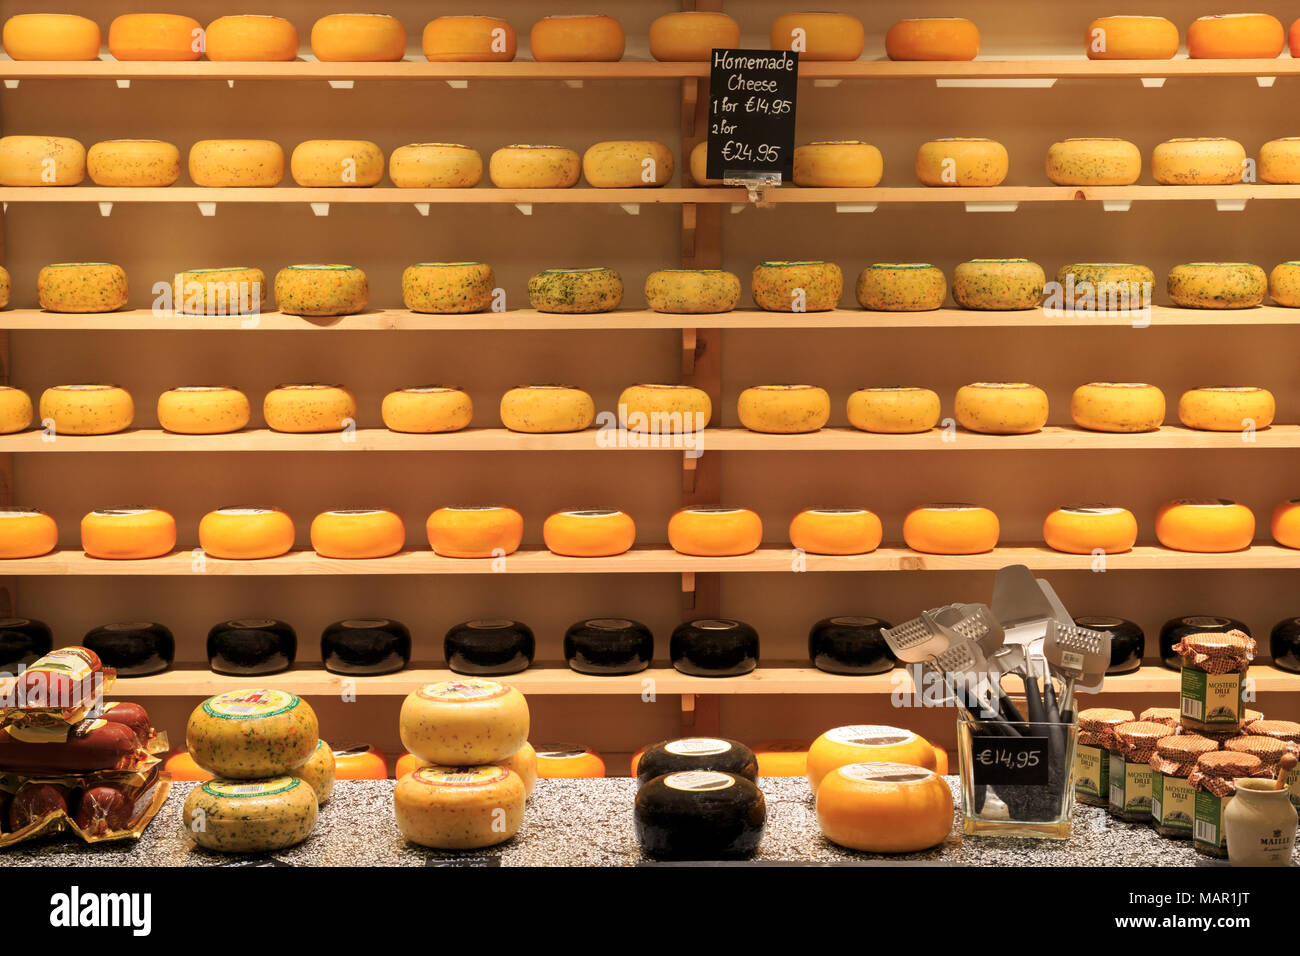 https://c8.alamy.com/comp/MAR1JT/cheese-factory-volendam-north-holland-netherlands-europe-MAR1JT.jpg